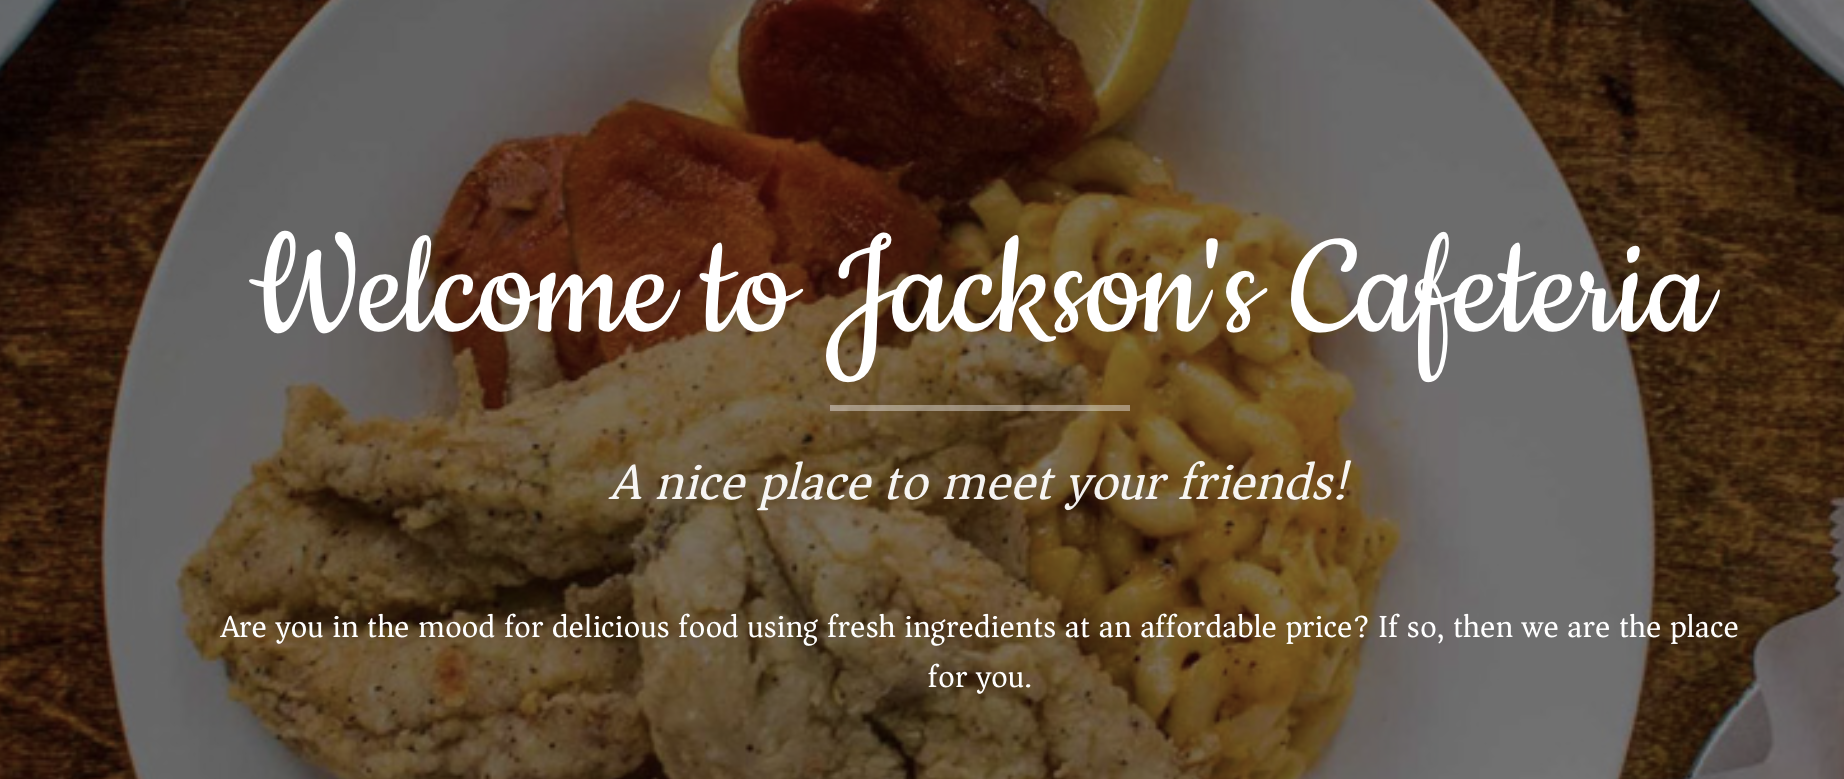 021_CAC Jacksons Cafeteria